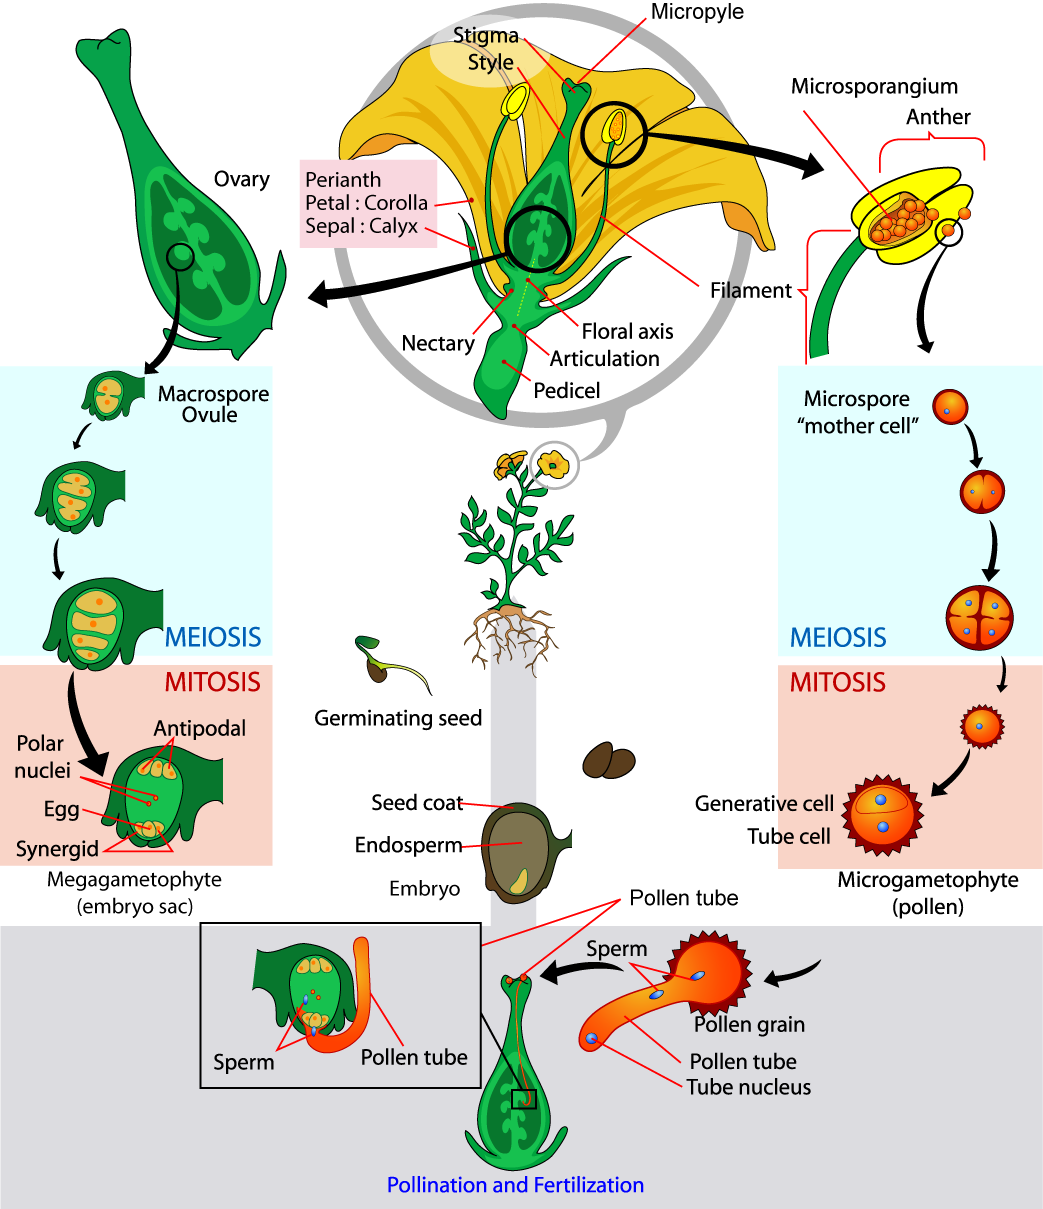 يتم عرض أجزاء الزهرة. تسمى قاعدة العجان، التي تشمل البتلات والسبالات، محور الفلورا. يفصل ضيق يسمى المفصل محور الأزهار عن القضيب السفلي، الذي يربط الزهرة بالساق. ميكروسبورانجيا هي في الفهود. تتكون الجراثيم الدقيقة أو الخلايا الأم داخل الميكروسبورانجيا. يخضع الميكروسبوغ للانقسام الاختزالي، وينتج أربع خلايا، تتحول كل منها إلى حبة من حبوب اللقاح بطبقة صلبة. تخضع حبوب اللقاح للانقسام الفتيلي، وتنتج خلية مولدة وخلية أنبوبية. تتشكل الجراثيم الكبيرة داخل الكرمل الشبيه بالزهرية، في البويضات، الموجودة في المبيضين. تخضع الجراثيم الكبيرة للانقسام الاختزالي وتنتج أربع خلايا. ثم تخضع الخلايا بعد ذلك للانقسام الفتيلي، وتنتج ثلاثة أجسام مضادة، ونوتين قطبيتين، وبيضة واثنين من التآزر، ولكل منها نواة. وتُسمى هذه الخلايا معًا بالورم الضخم أو كيس الجنين. يحدث التلقيح عندما تهبط حبوب اللقاح على الوصمة، وهي البنية المسطحة في الجزء العلوي من الكرمل. تنمو نواة الأنبوب في النمط الطويل، إلى المبيض. هناك، تقوم الخلية التوليدية للحيوانات المنوية بتخصيب البويضة.